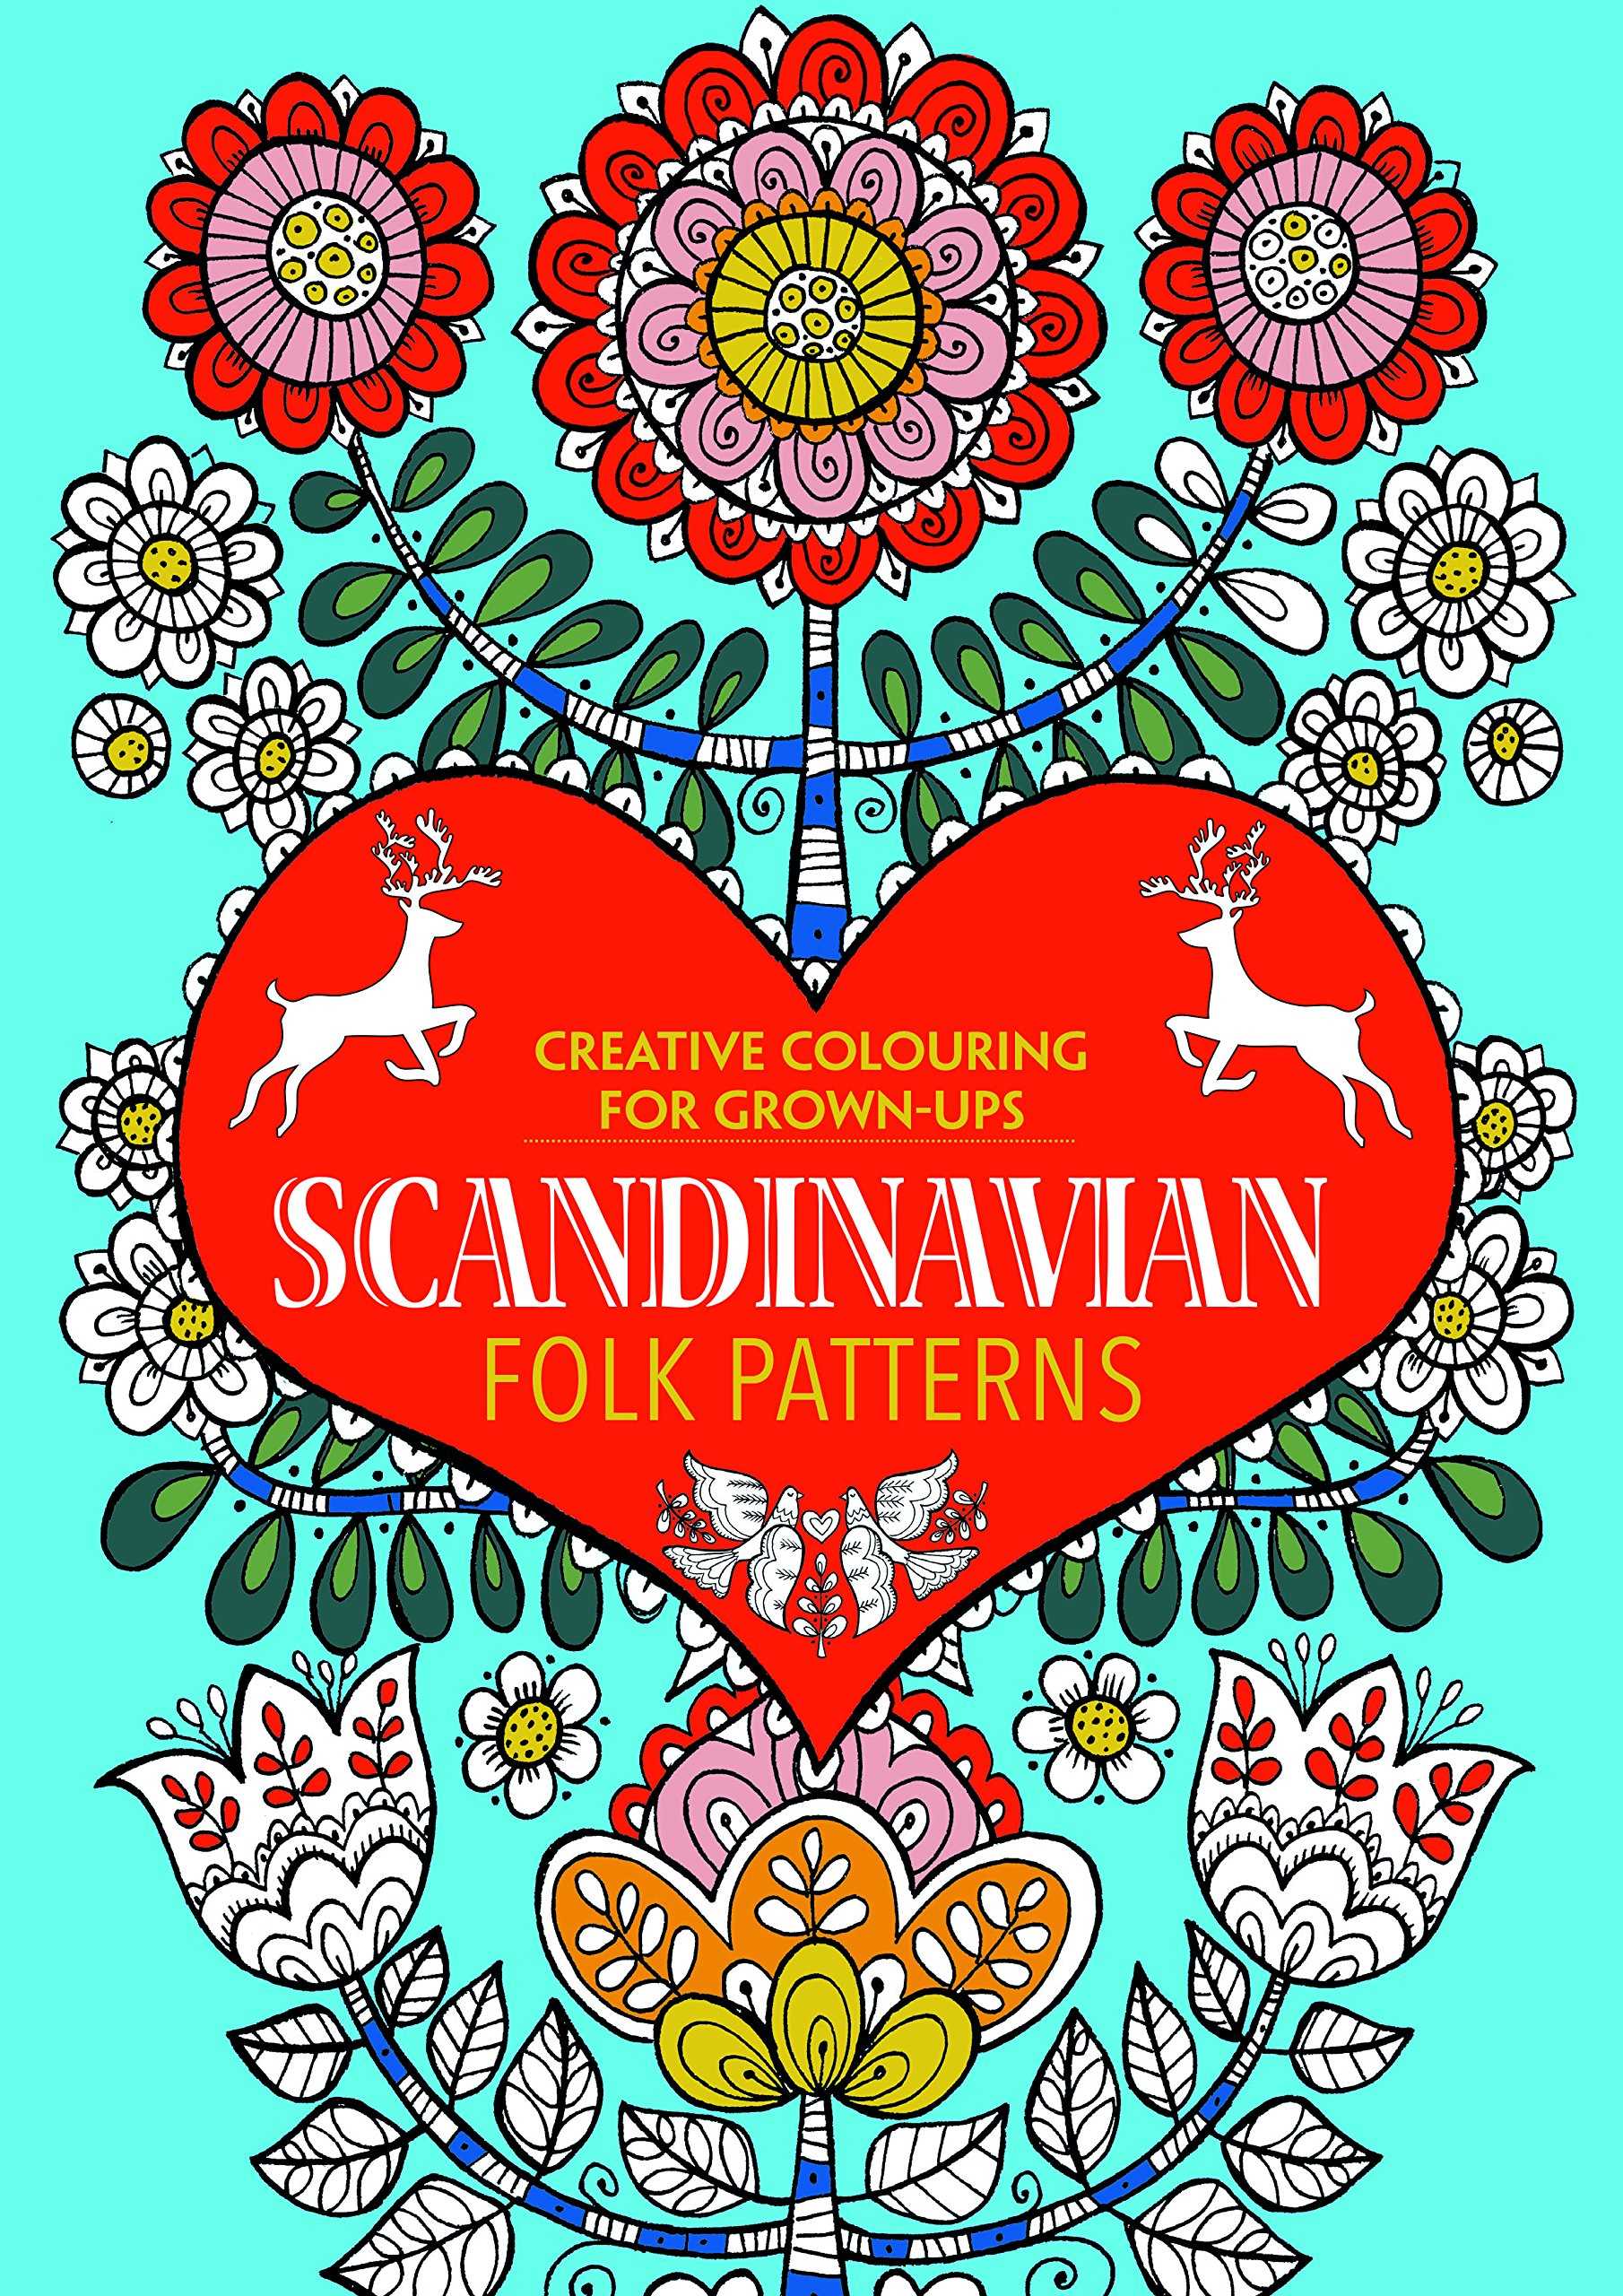 Scandinavian Folk Patterns: Creative Colouring for Grown-ups